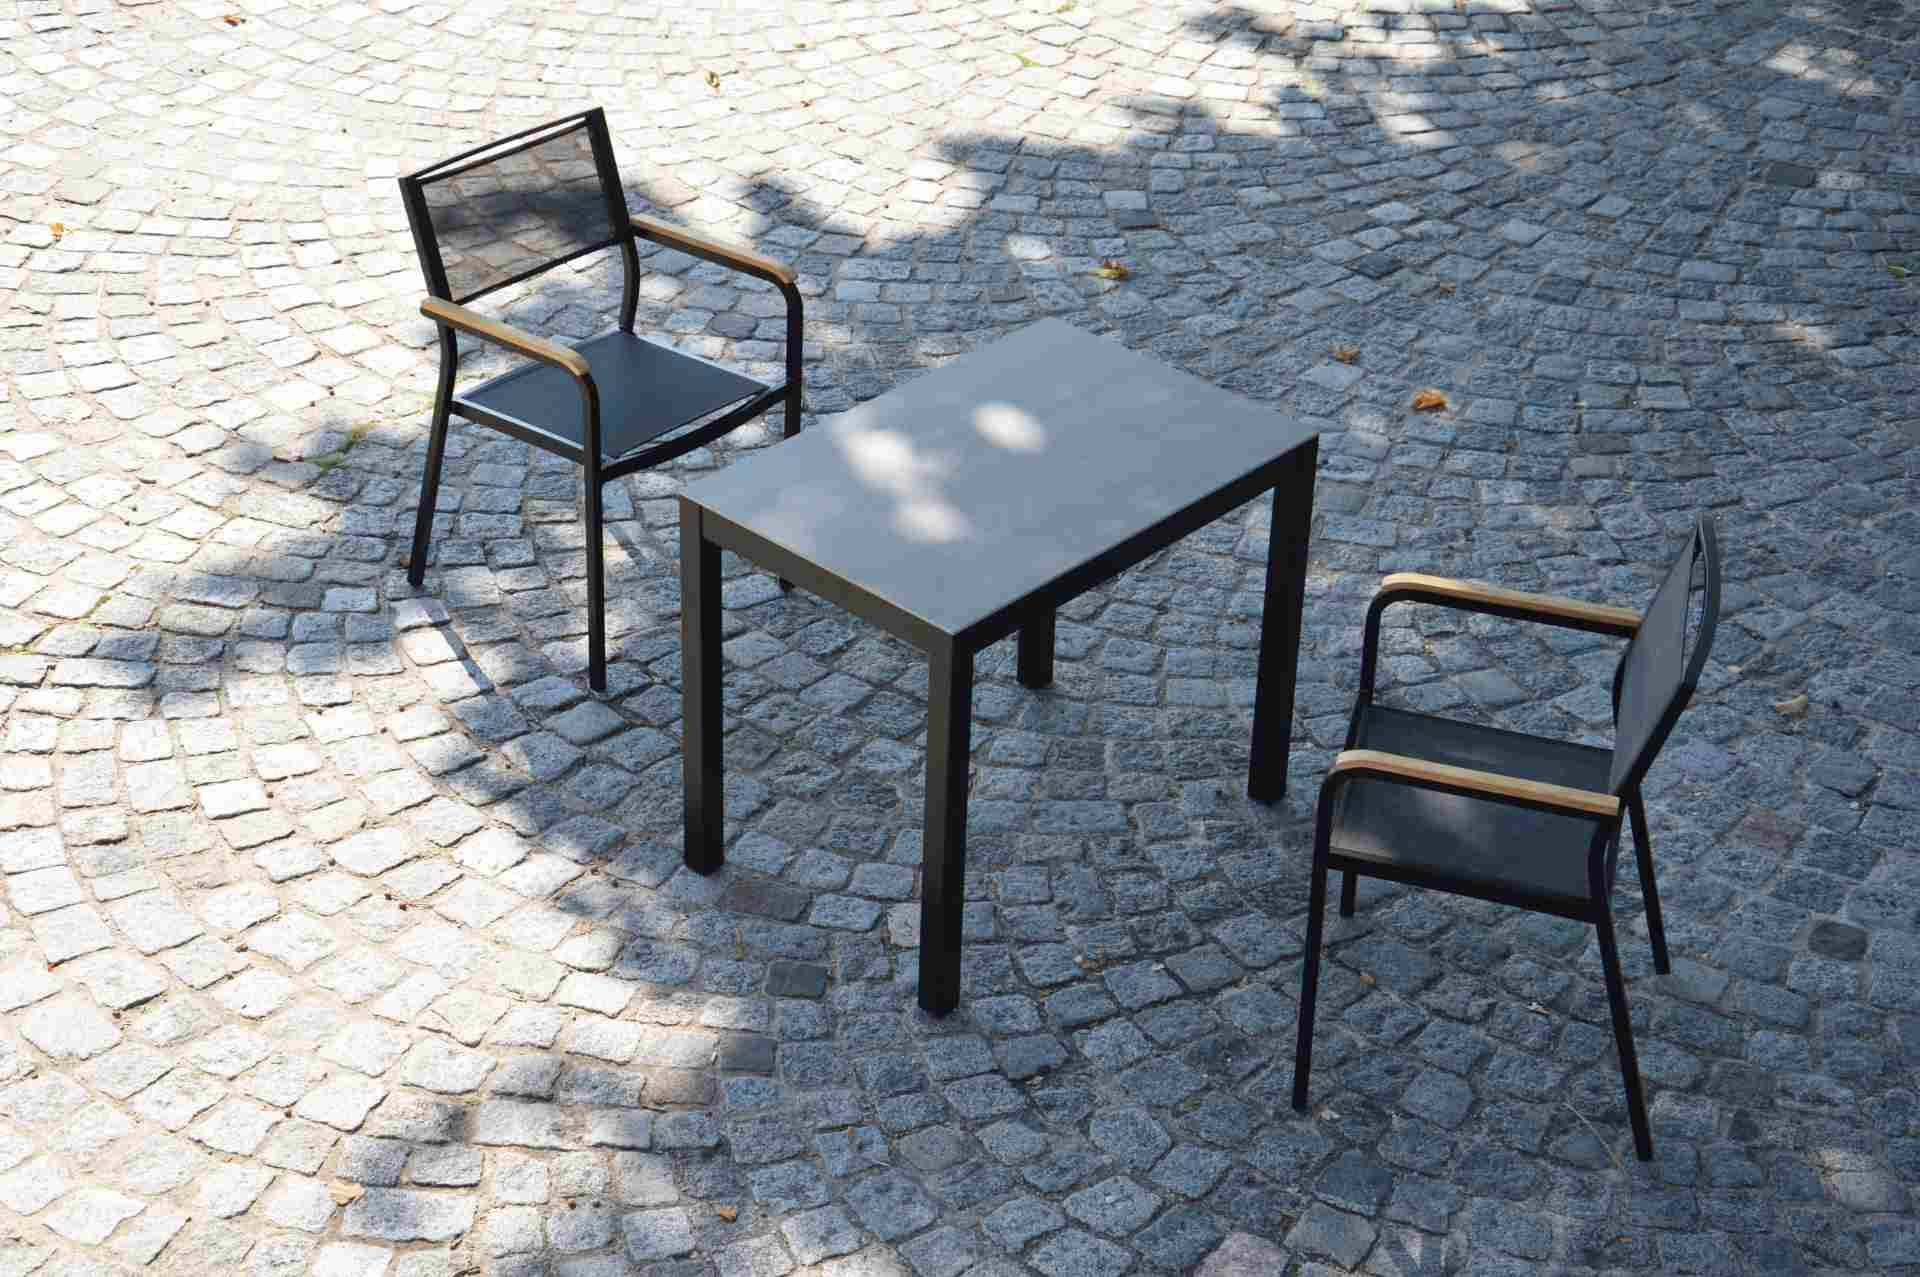 Der Stapelsessel Lux besitzt ein modernes Design. Hergestellt wurde der Sessel aus Aluminium von der Marke Jan Kurtz. Der Sessel besitzt die Farbe Schwarz.